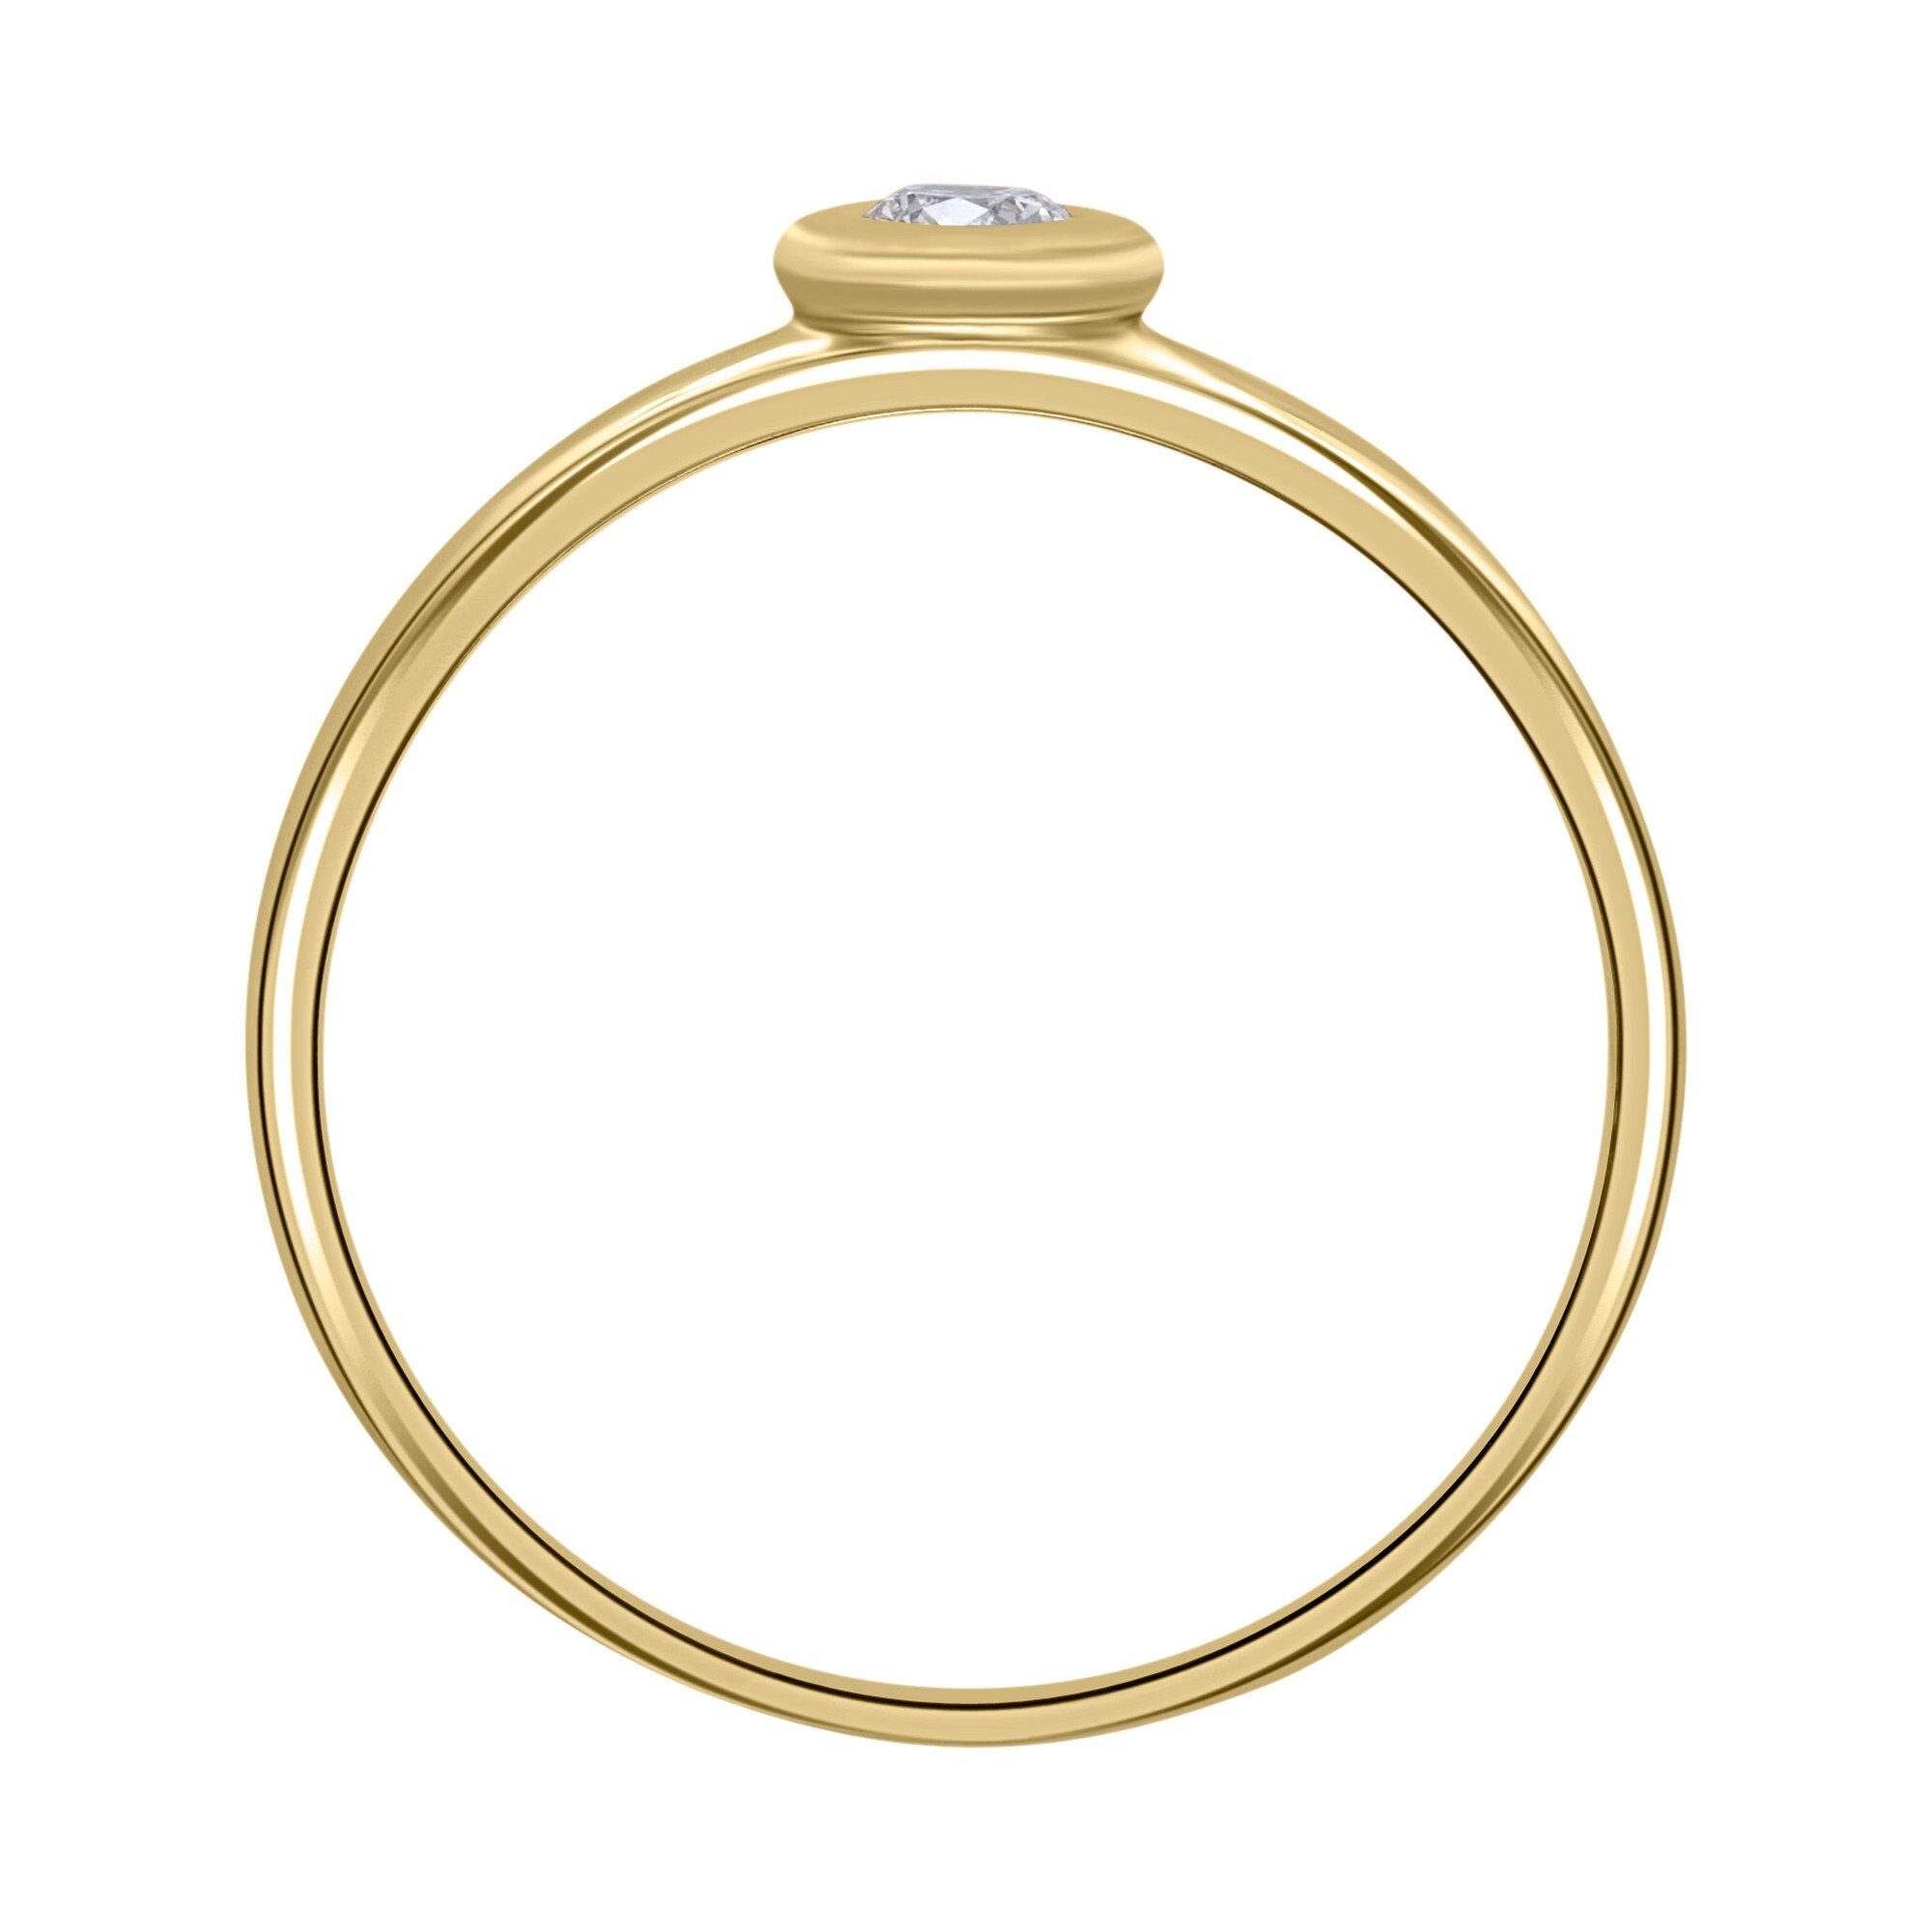 ONE ELEMENT Diamantring 0,08 ct Gold Diamant Brillant Ring Damen 585 aus Gelbgold, Schmuck